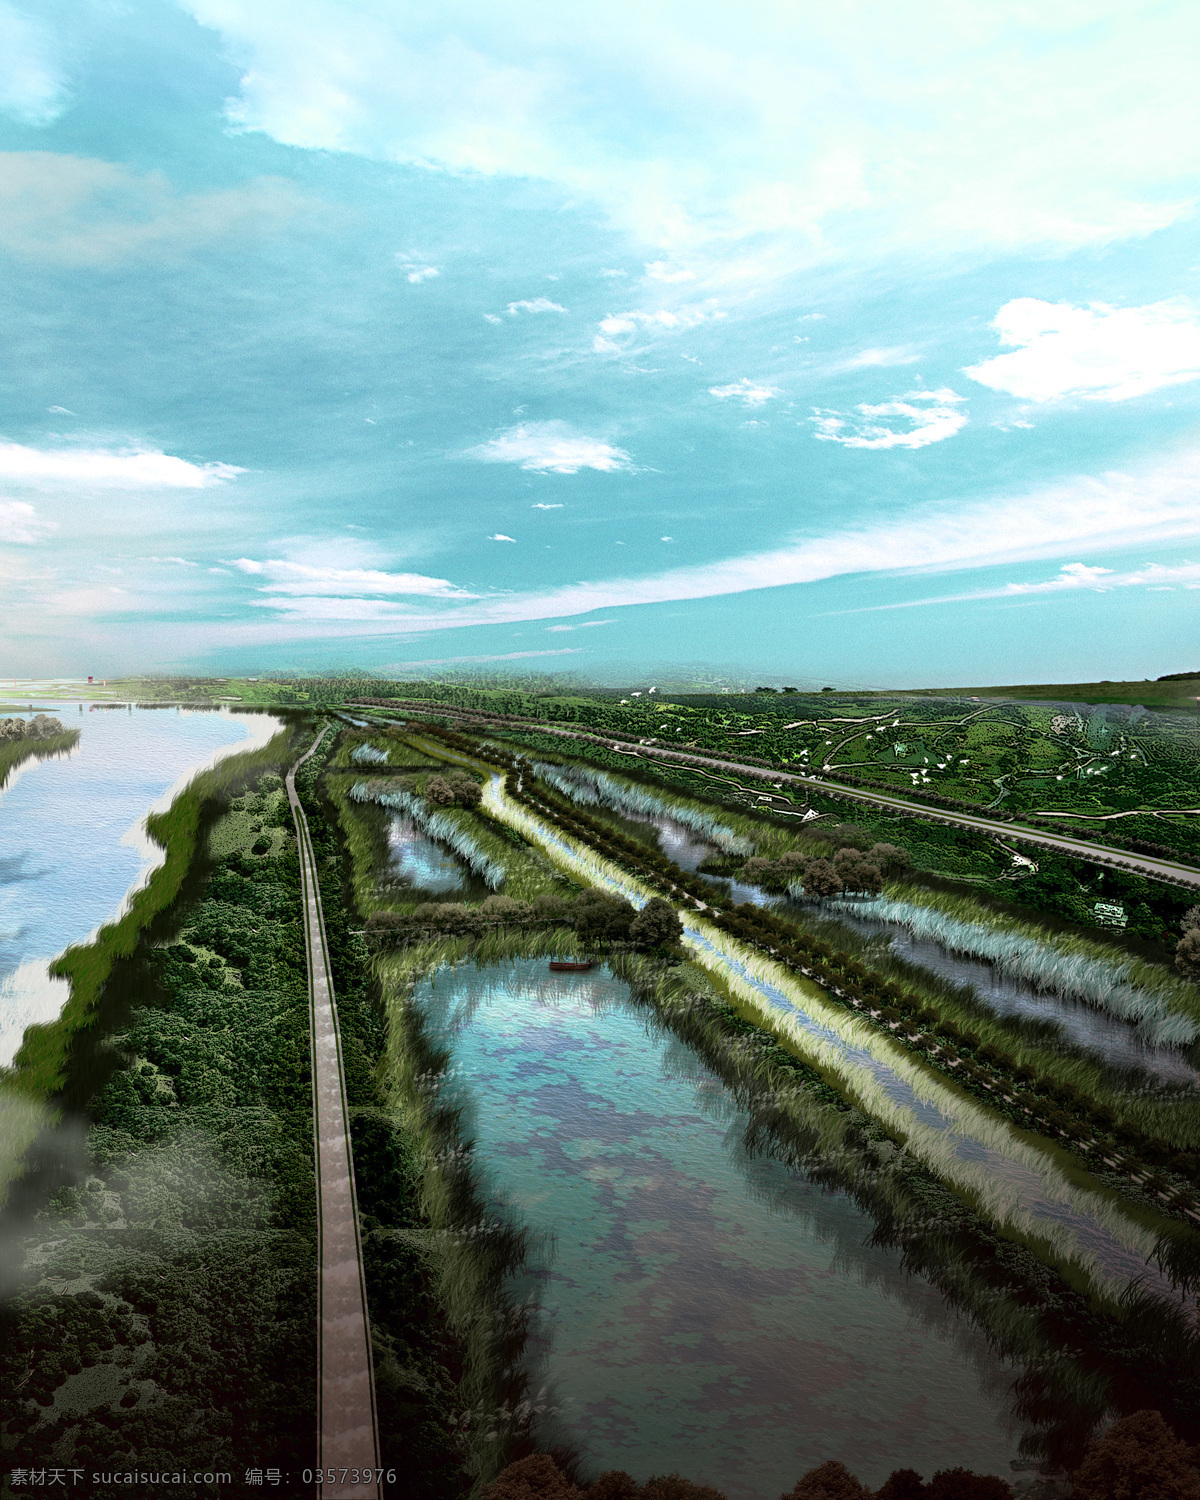 环境设计 景观设计 芦苇 湿地 湿地效果图 河堤 湿地公园 渭河 千河 家居装饰素材